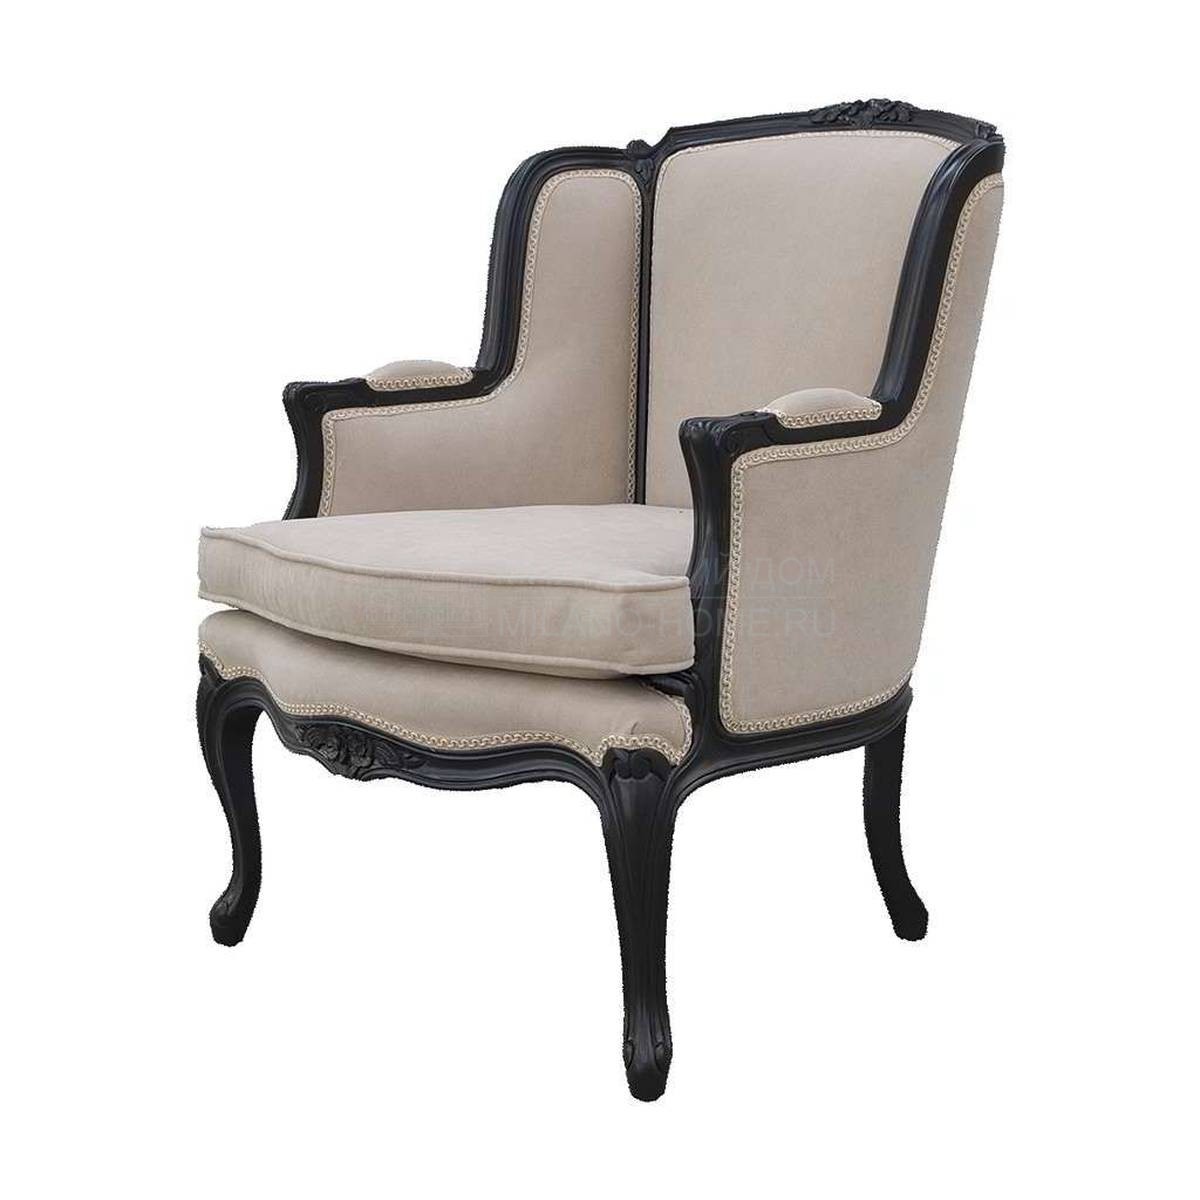 Кресло Z-8180 armchair из Испании фабрики GUADARTE